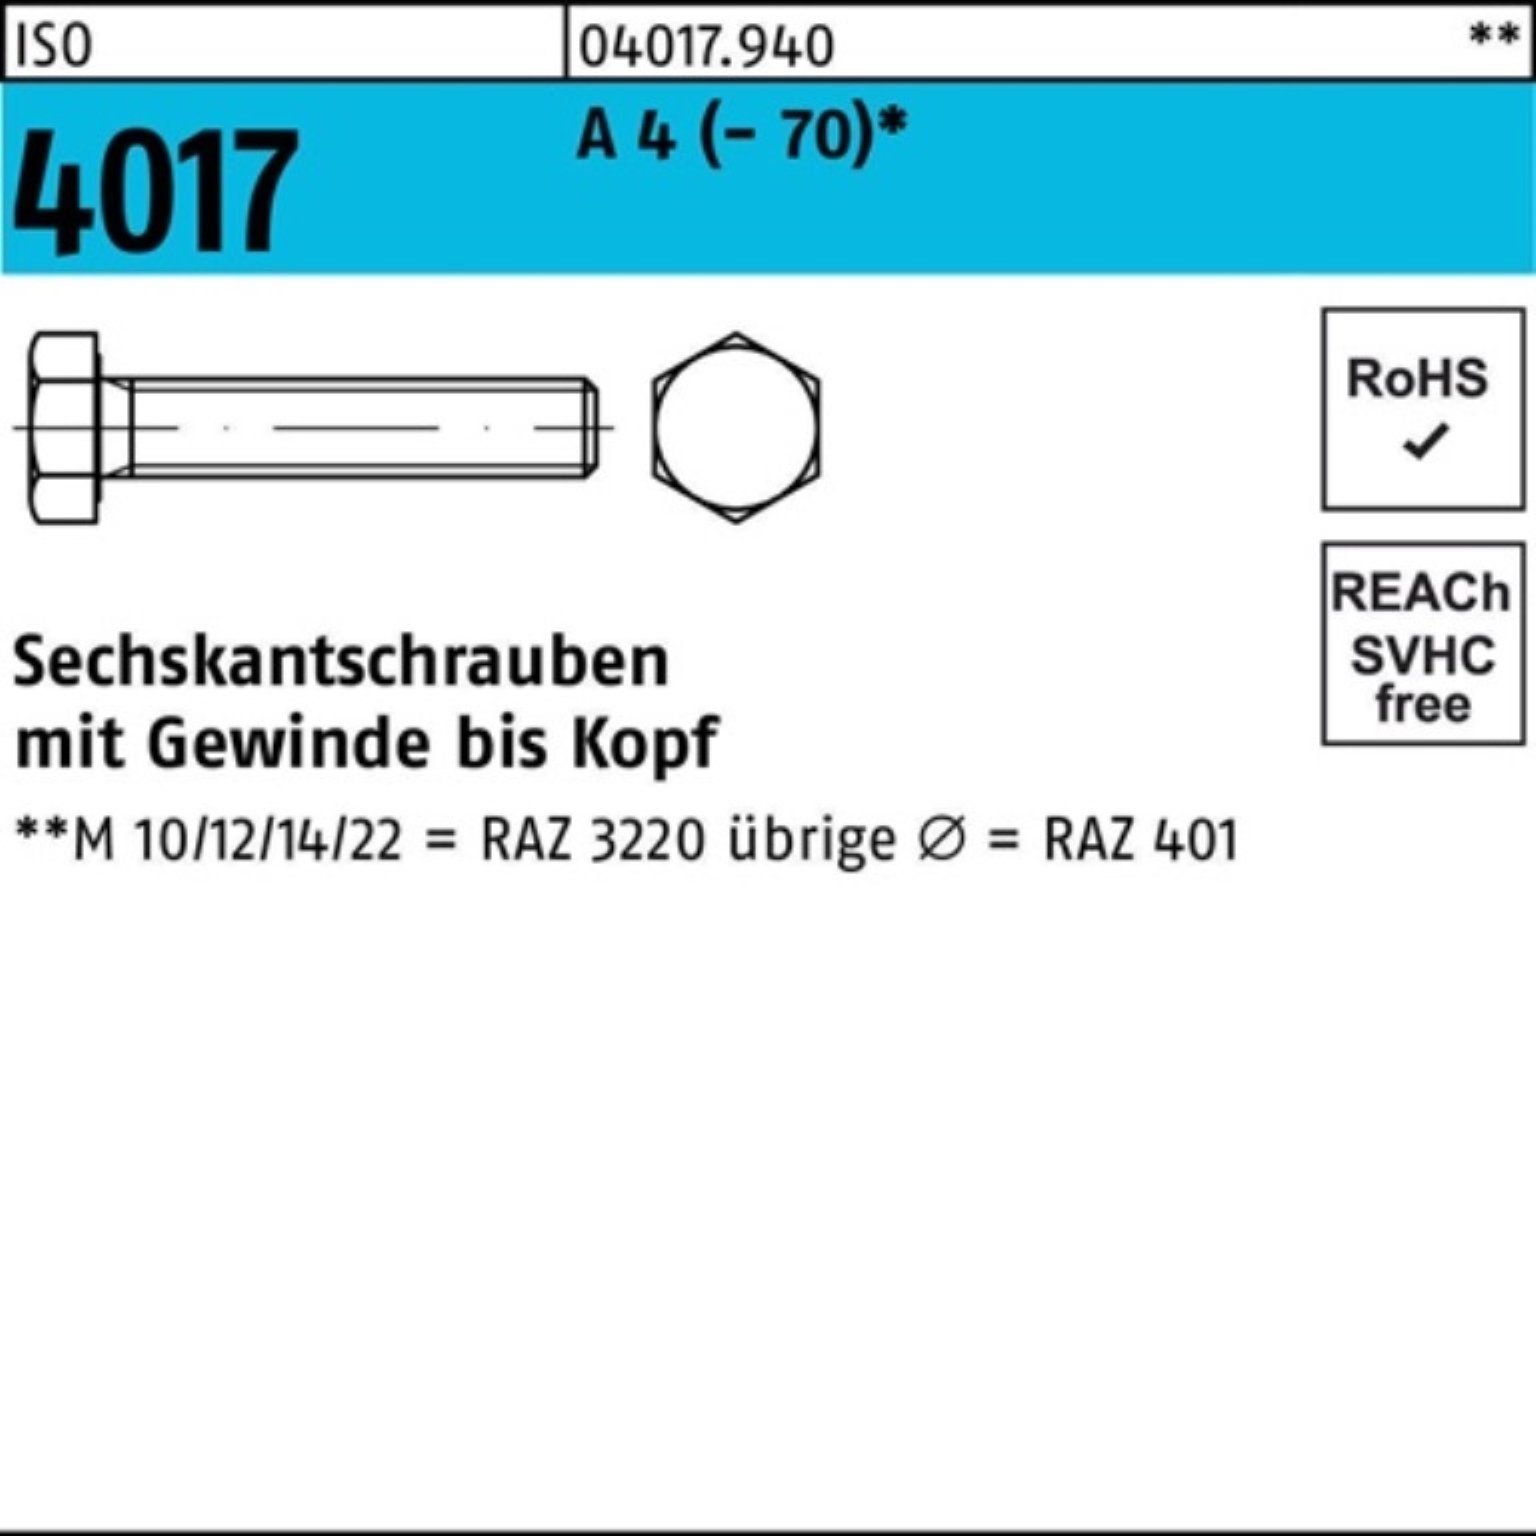 Bufab Sechskantschraube 100er Pack Sechskantschraube ISO 4017 VG M12x 100 A 4 (70) 50 Stück